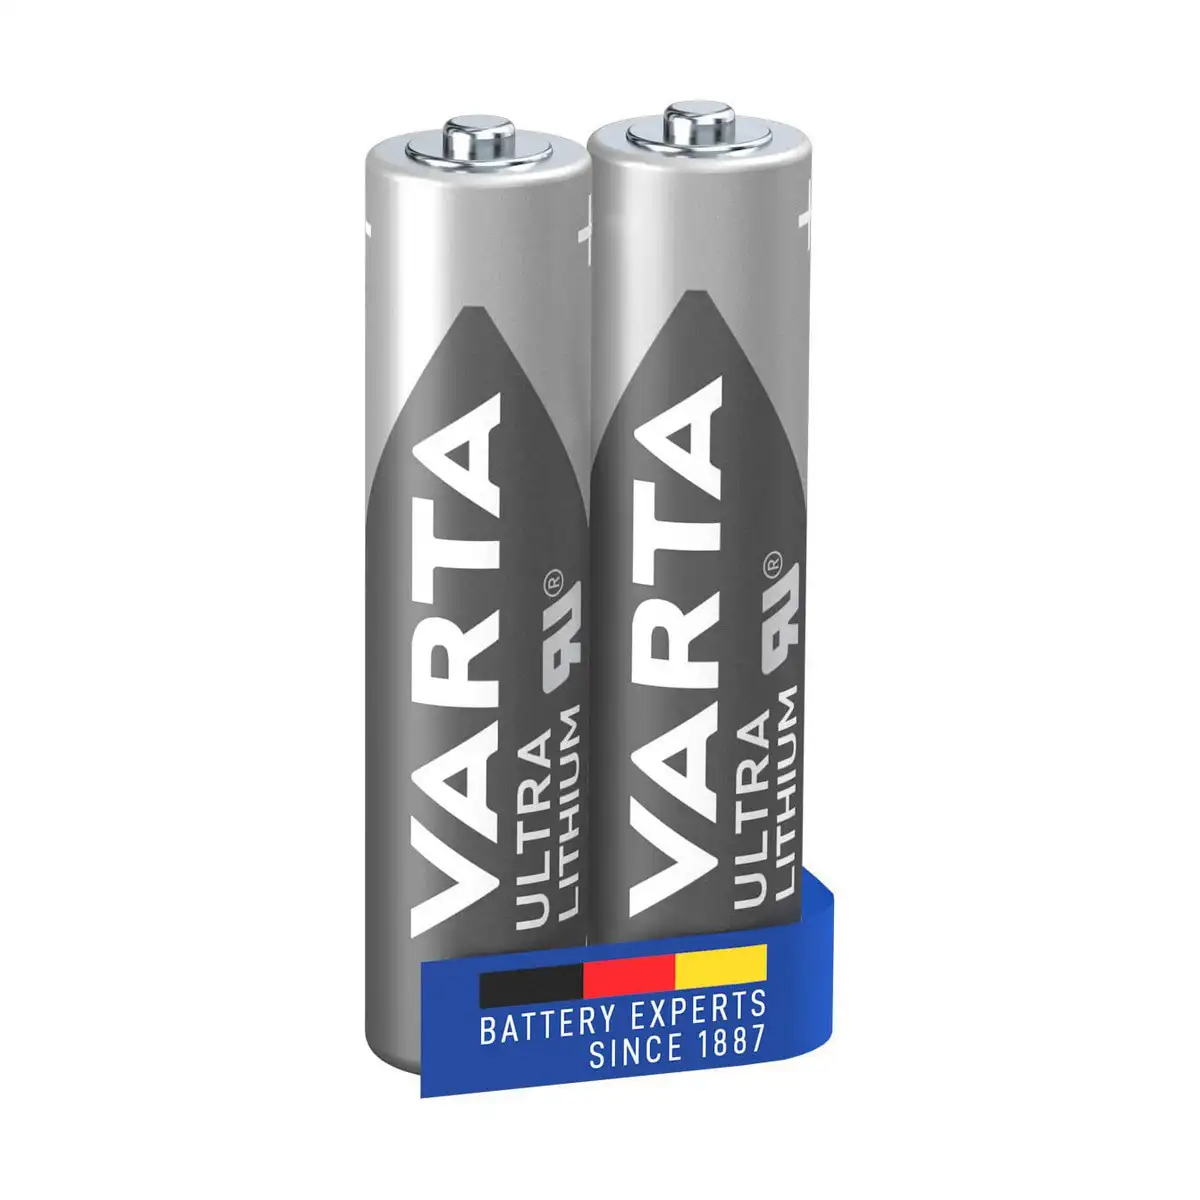 Batteries varta ultra lithium 2 pieces _9501. DIAYTAR SENEGAL - Votre Destination pour un Shopping Réfléchi. Découvrez notre gamme variée et choisissez des produits qui correspondent à vos valeurs et à votre style de vie.